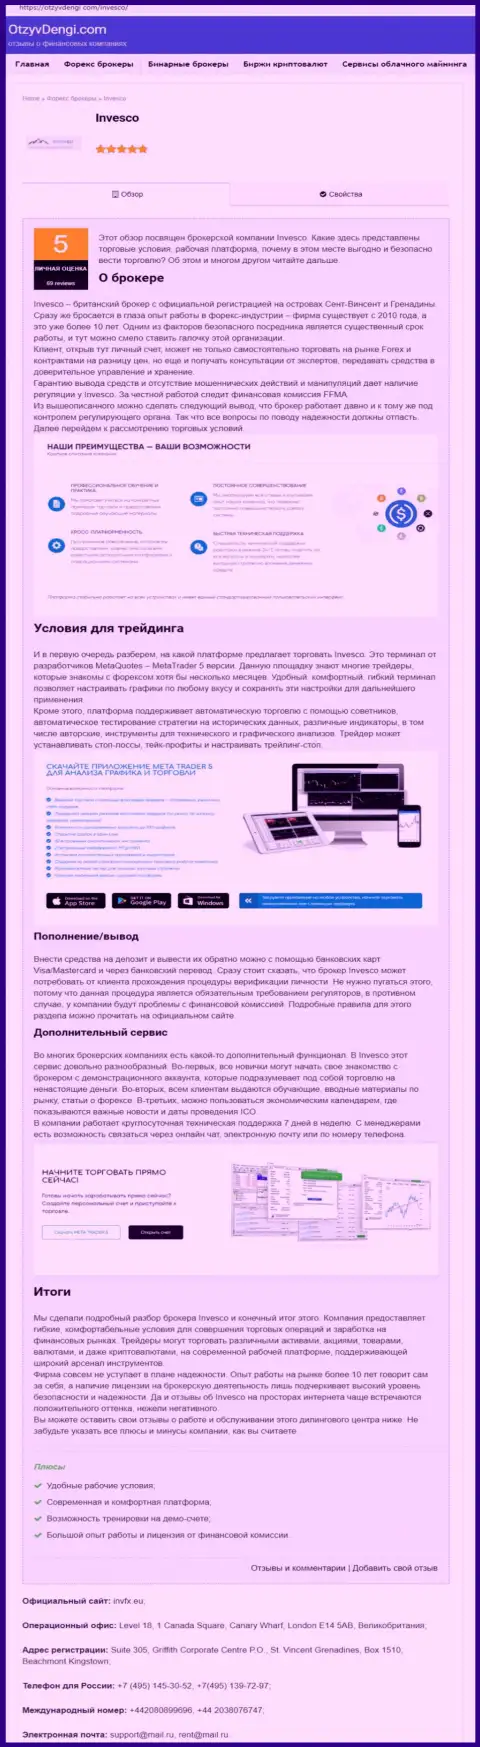 Онлайн-сервис ОтзывДеньги Ком представил публикацию о Форекс компании ИНВФХ